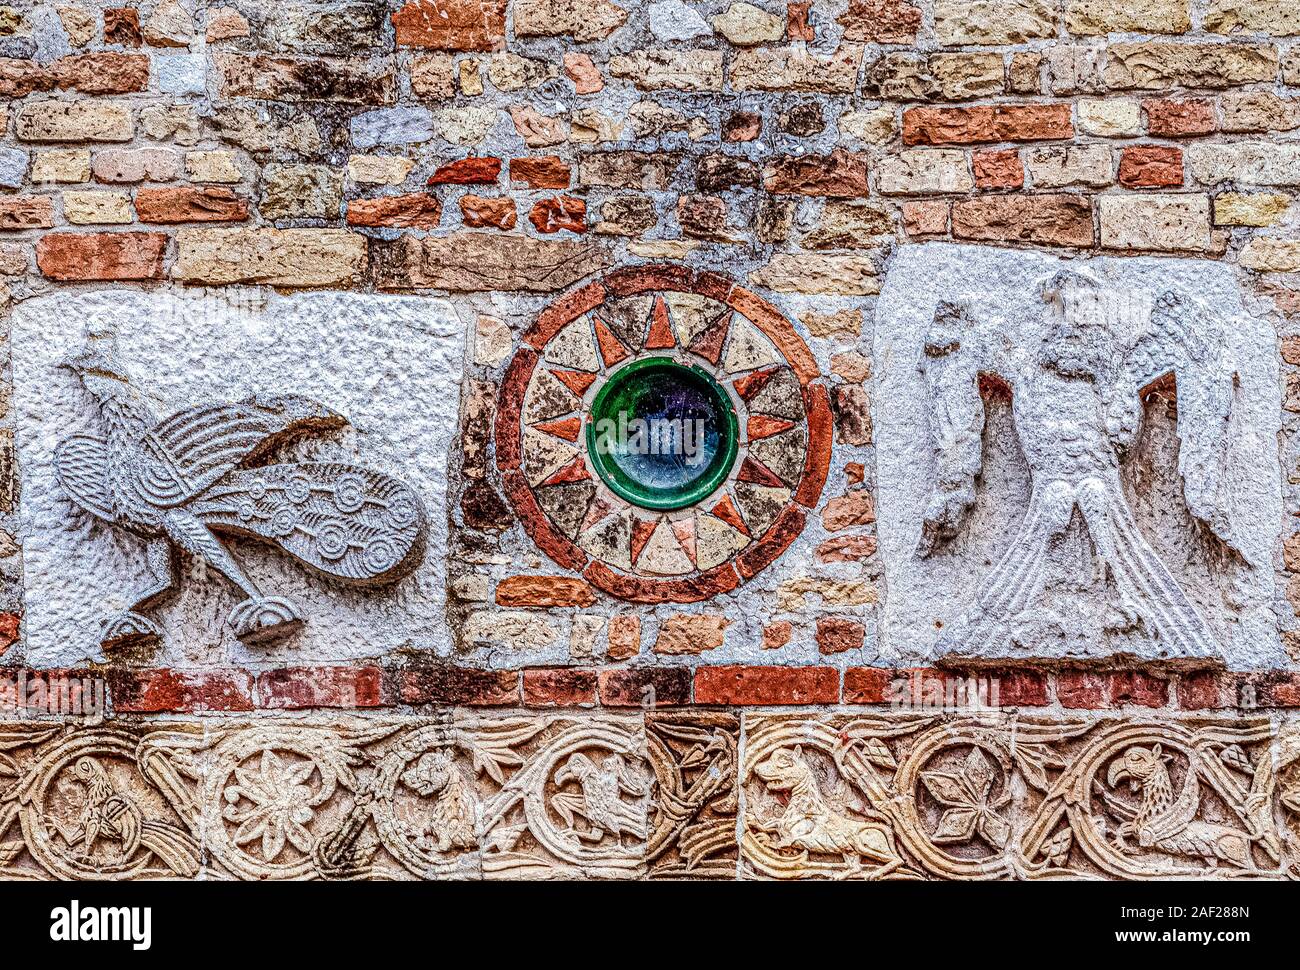 Italien Emilia Romagna Comacchio, Pomposa Abtei - Symbolik und externe Details - Adler und paecock Stockfoto